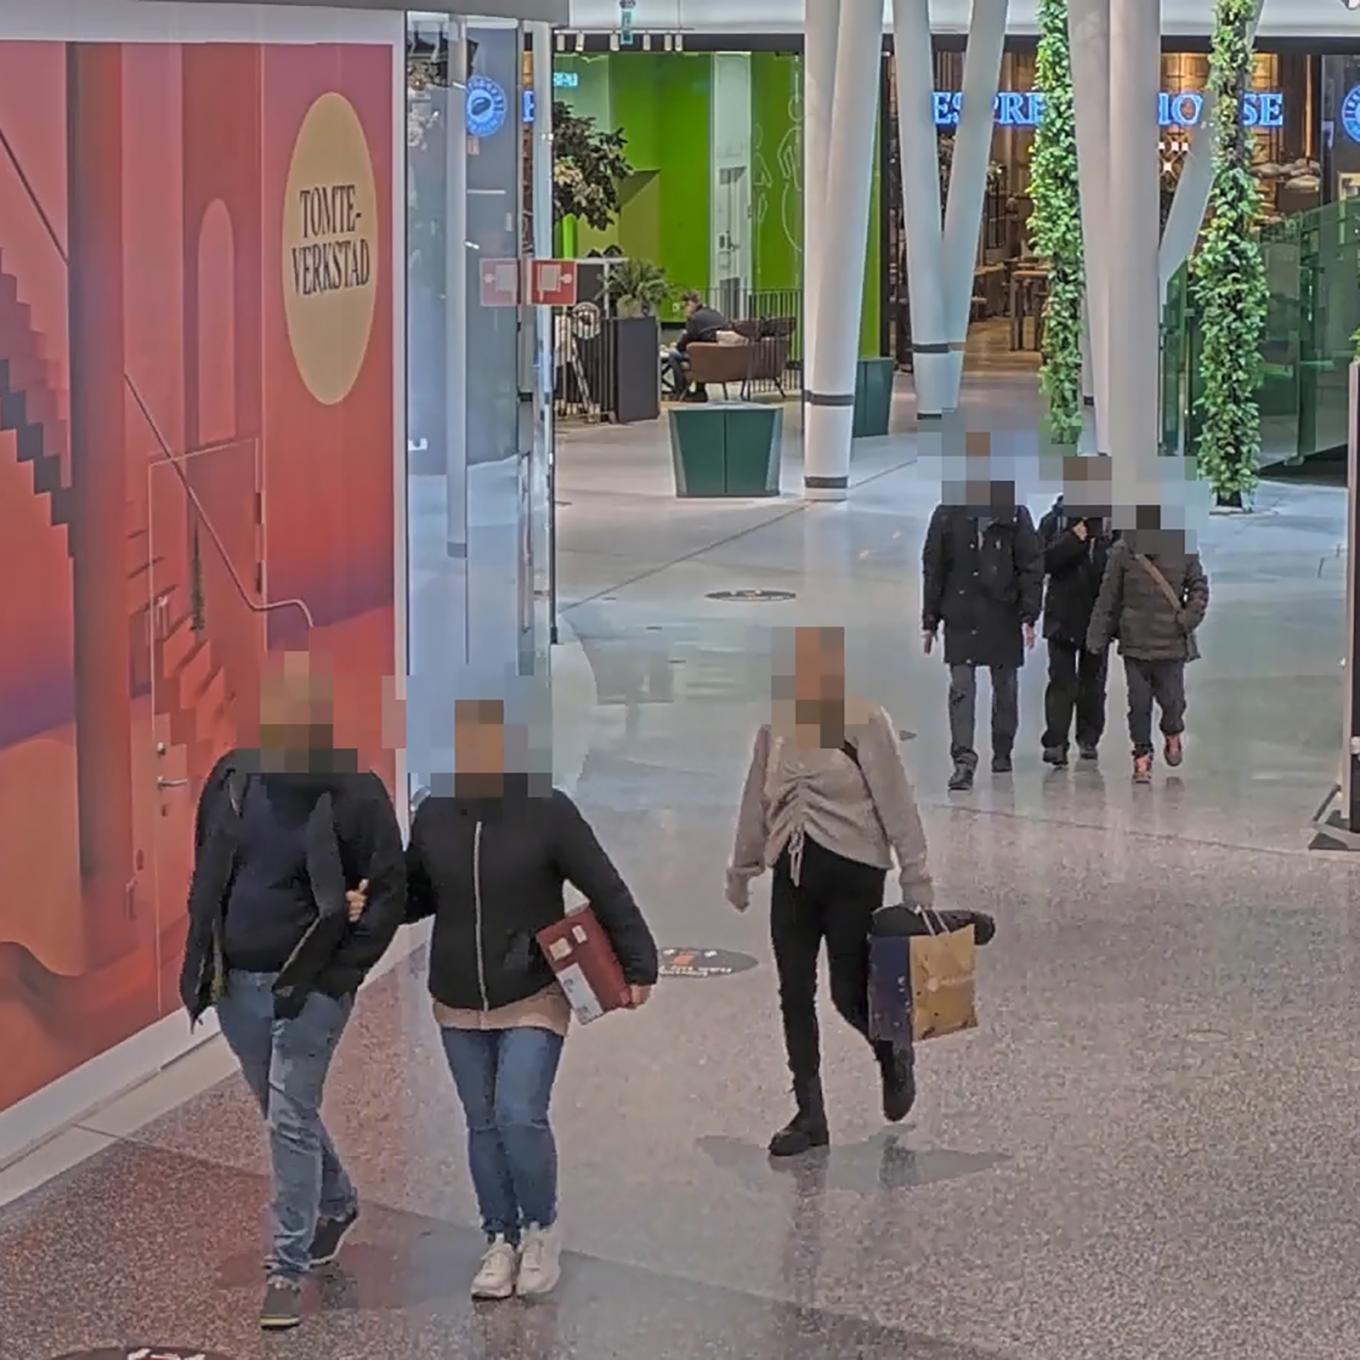 Espaço público com pessoas com rostos borrados devido ao AXIS Live Privacy Shield.